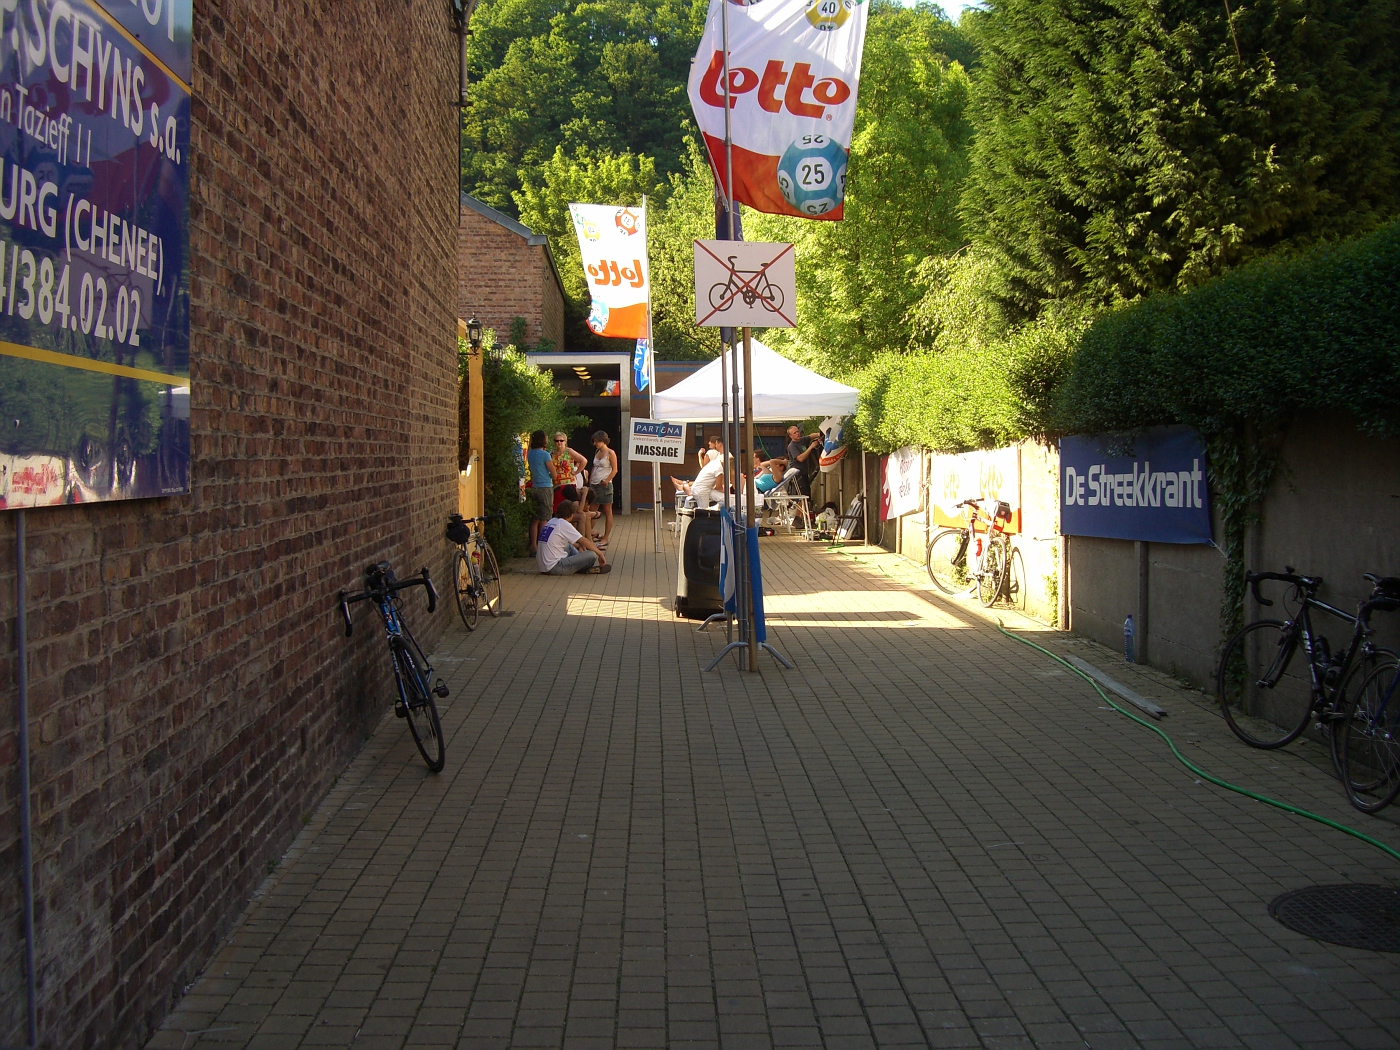 Tilff-Bastogne-Tilff 2008